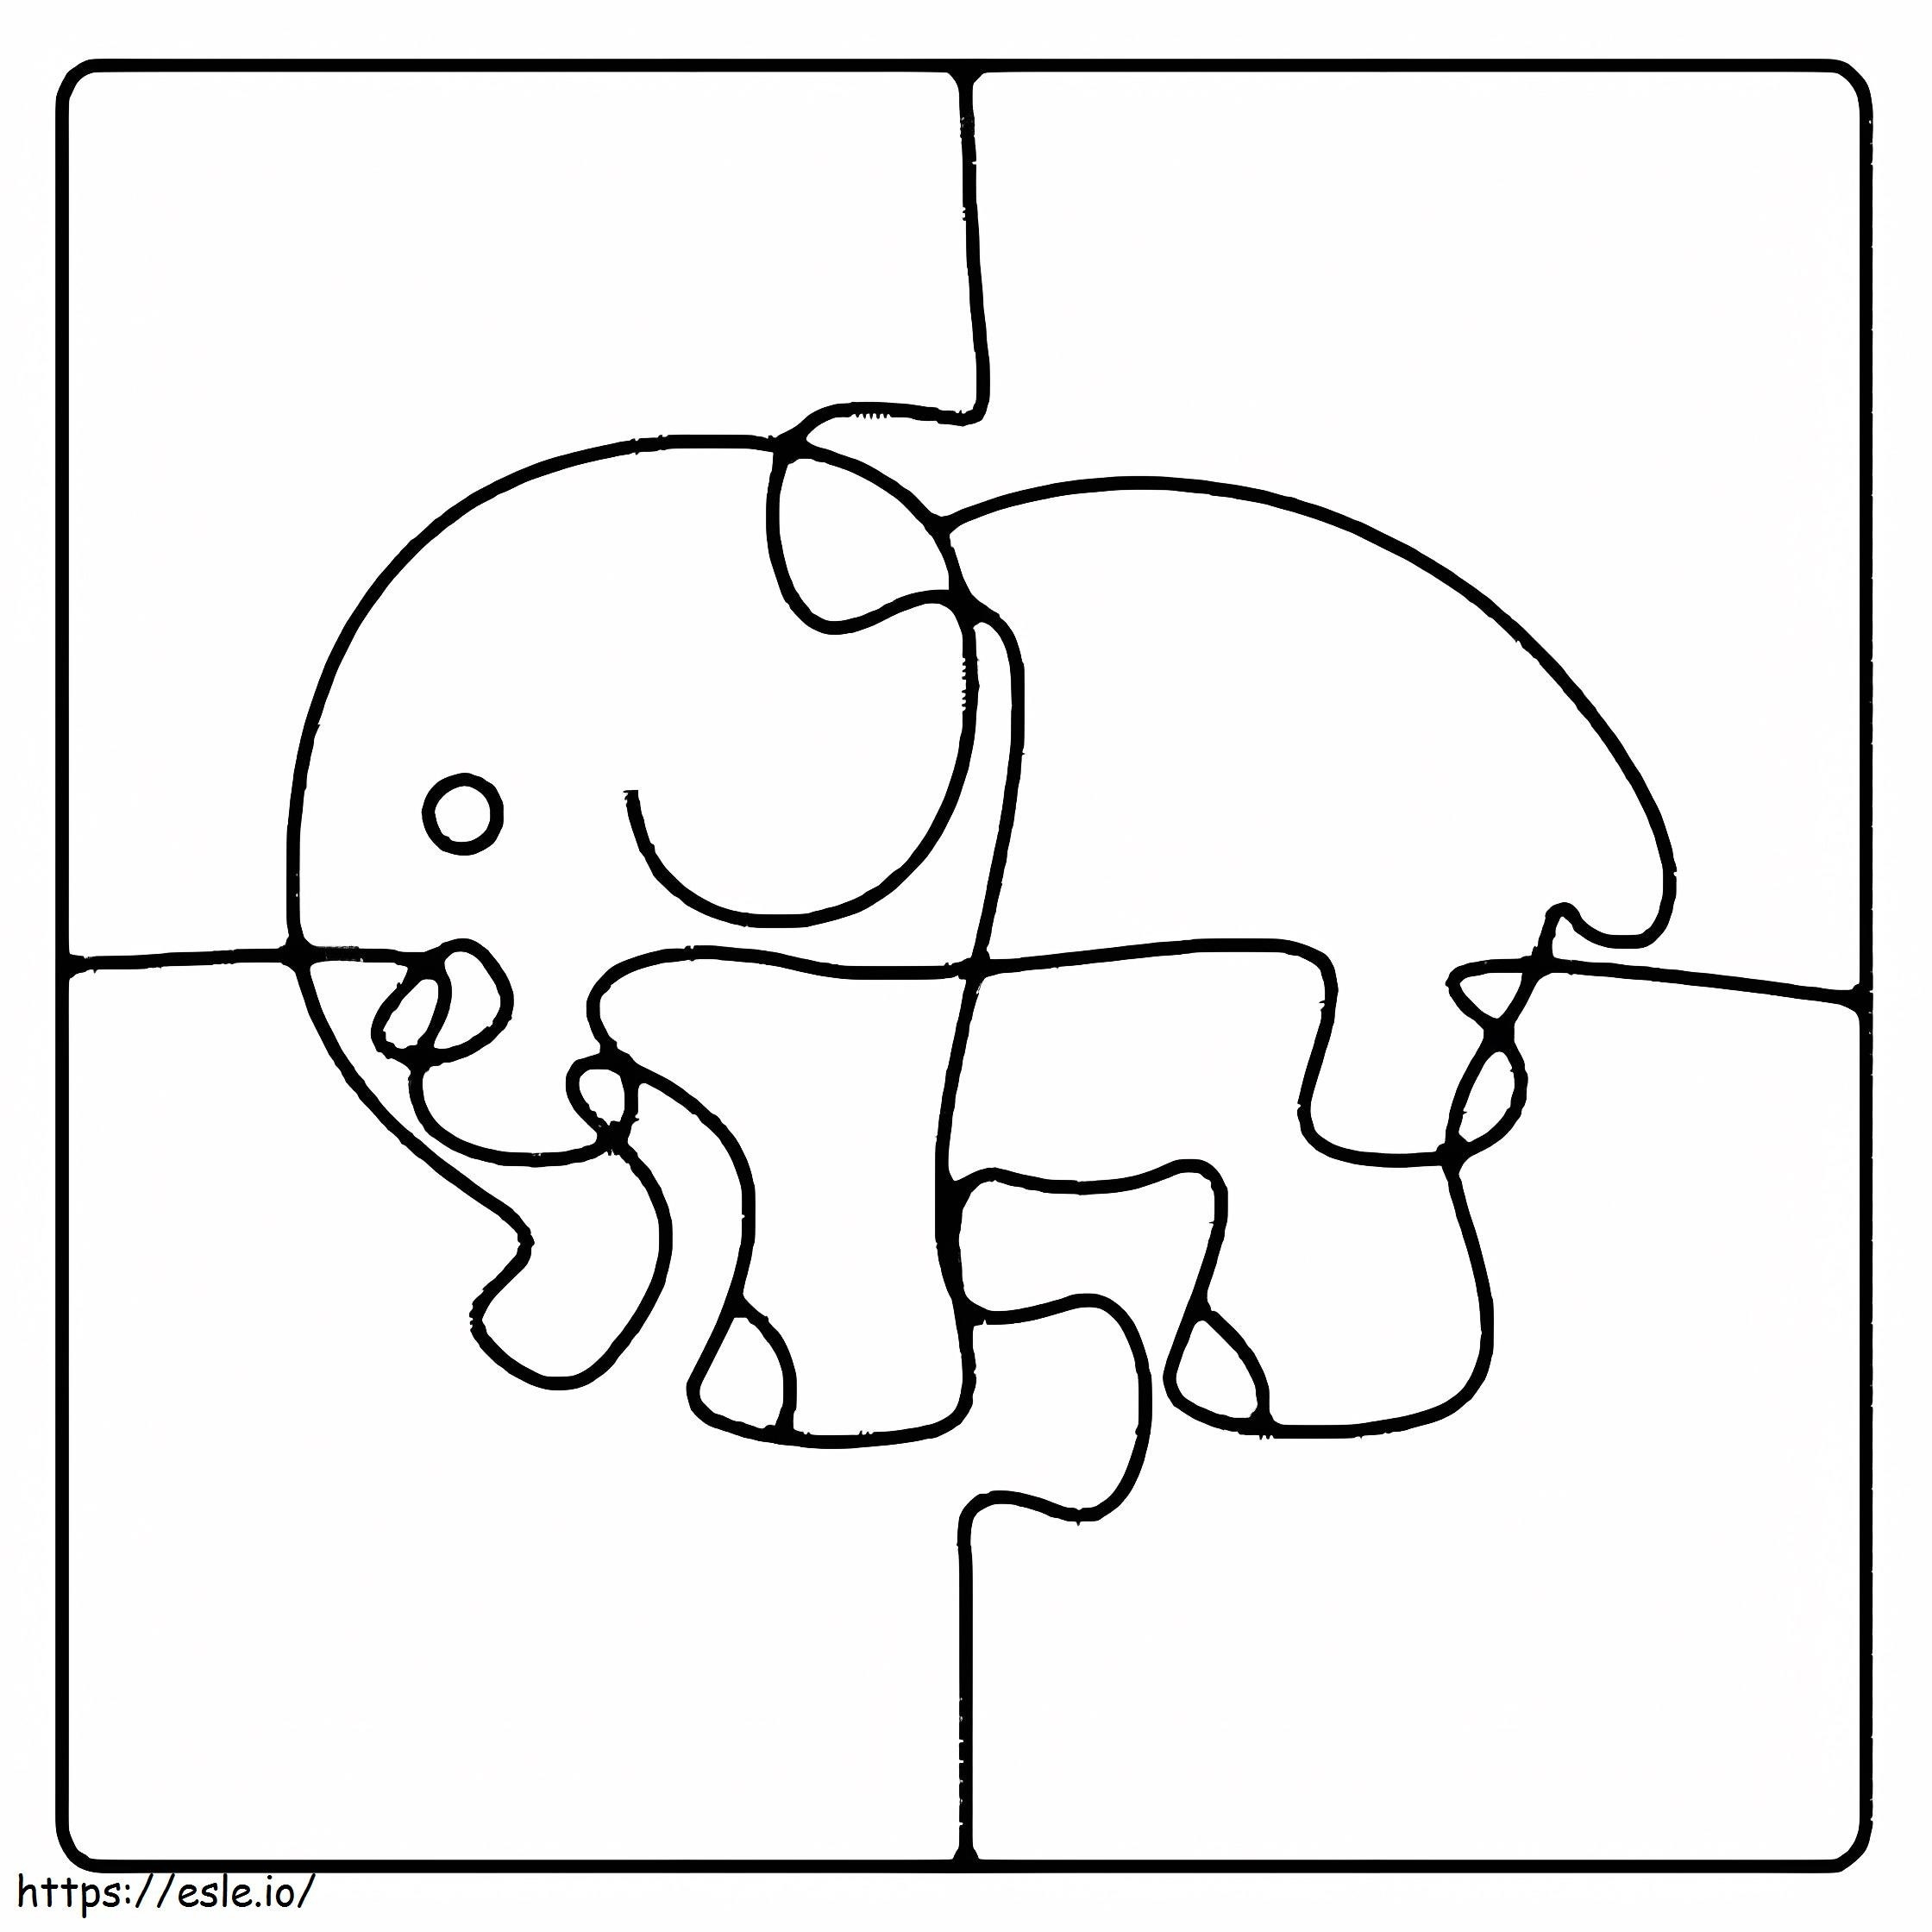 Quebra-cabeça do elefante para colorir